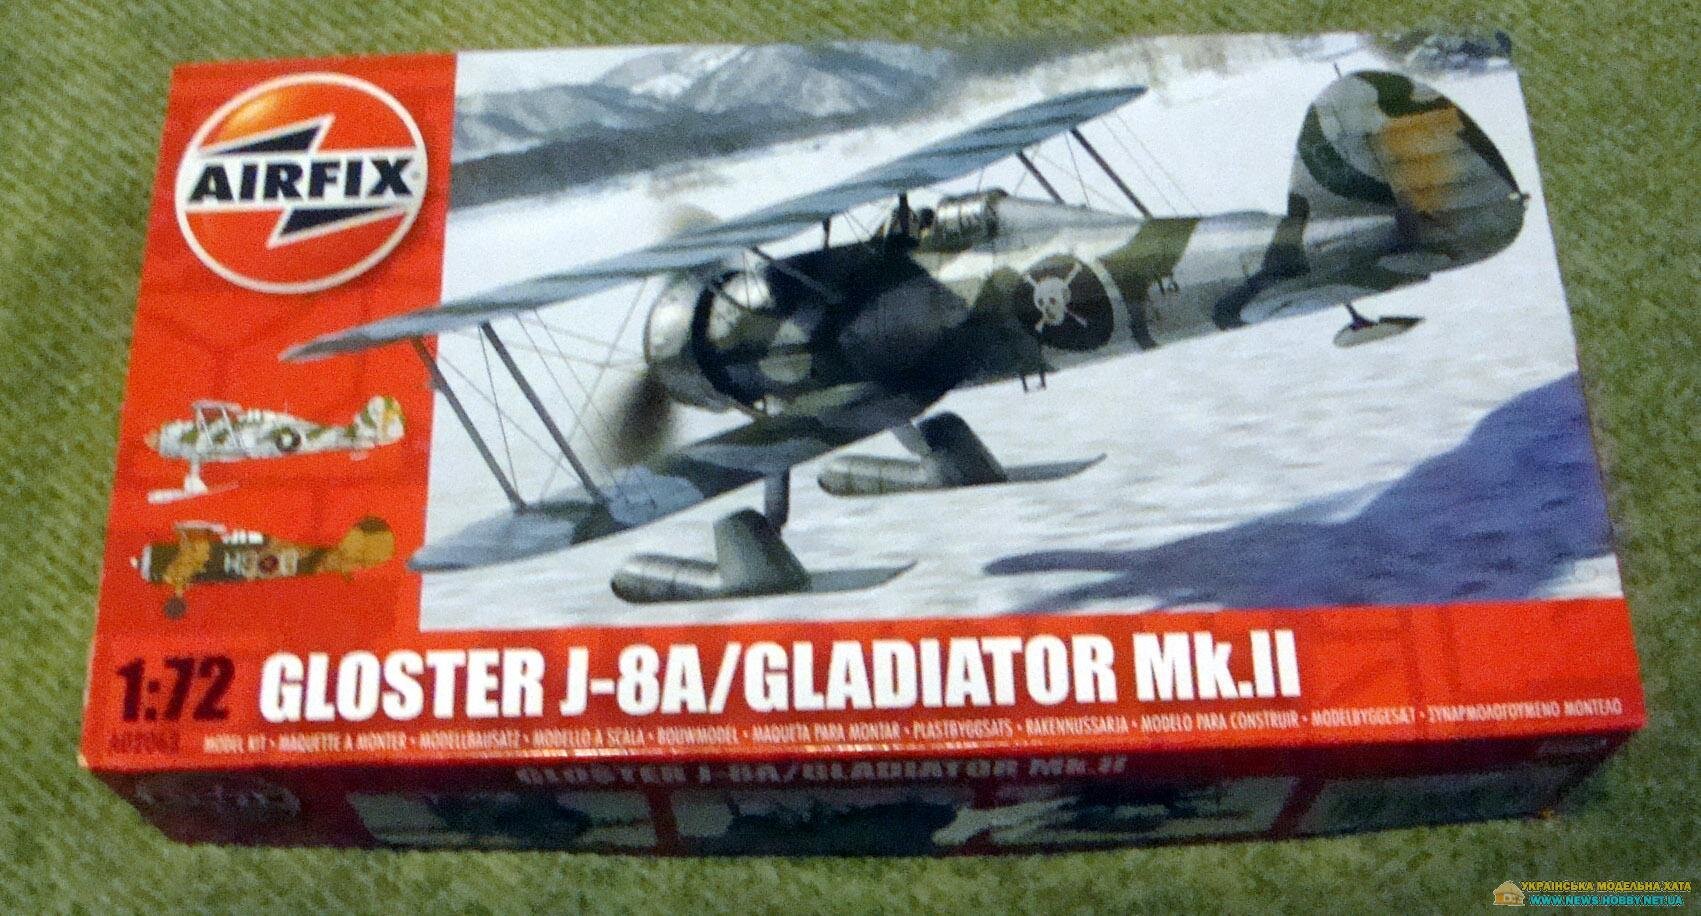 Gloster J-8A/Gladiator Mk.II Airfix A02063 - фото pic_aa6b59ee2418f1d38a68e5eaebfc3228_1920x9000_1.jpg